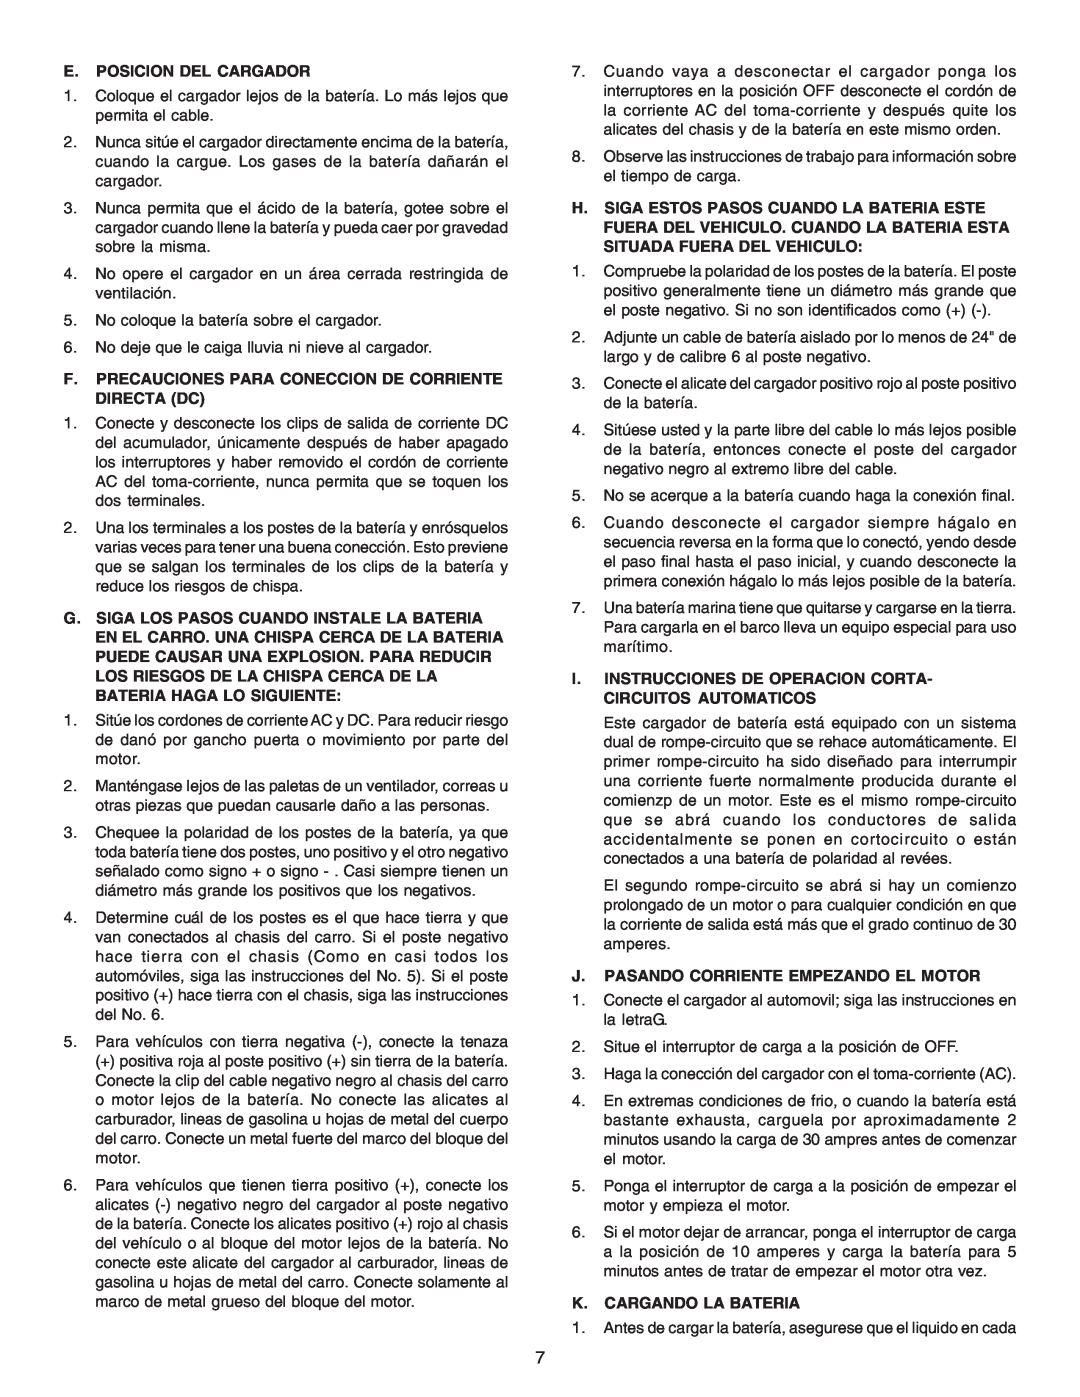 Schumacher 200-30 E. Posicion Del Cargador, F. Precauciones Para Coneccion De Corriente Directa Dc, K. Cargando La Bateria 